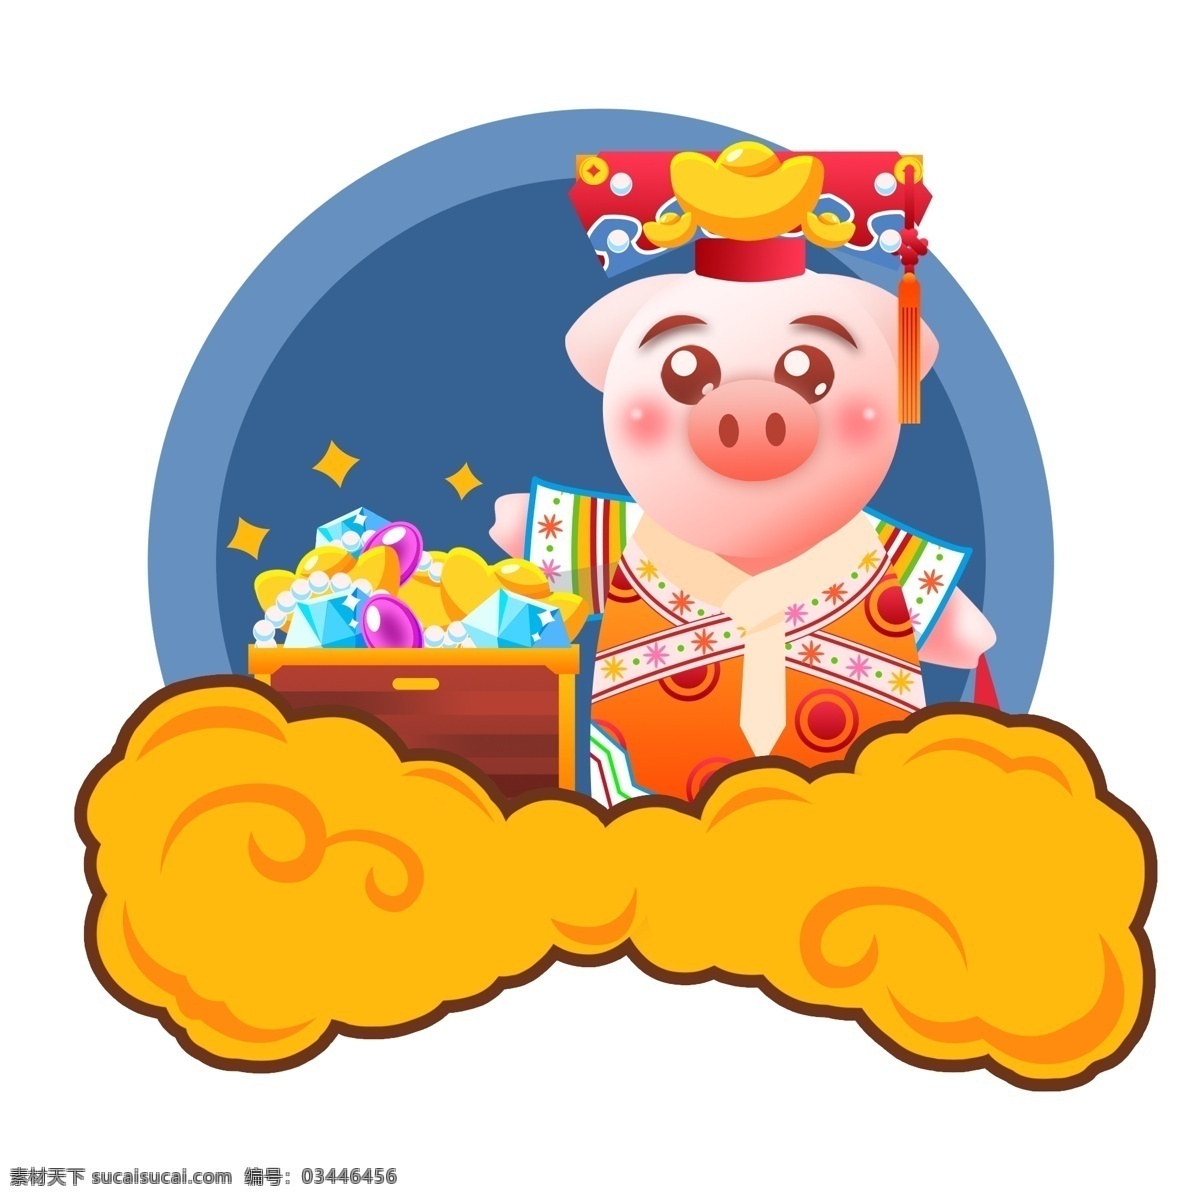 2019 春节 拜年 生肖 猪 格格 宝藏 宝石 钻石 卡通 可爱 新年 猪年快乐 满族元素 珍珠 财宝 旗头